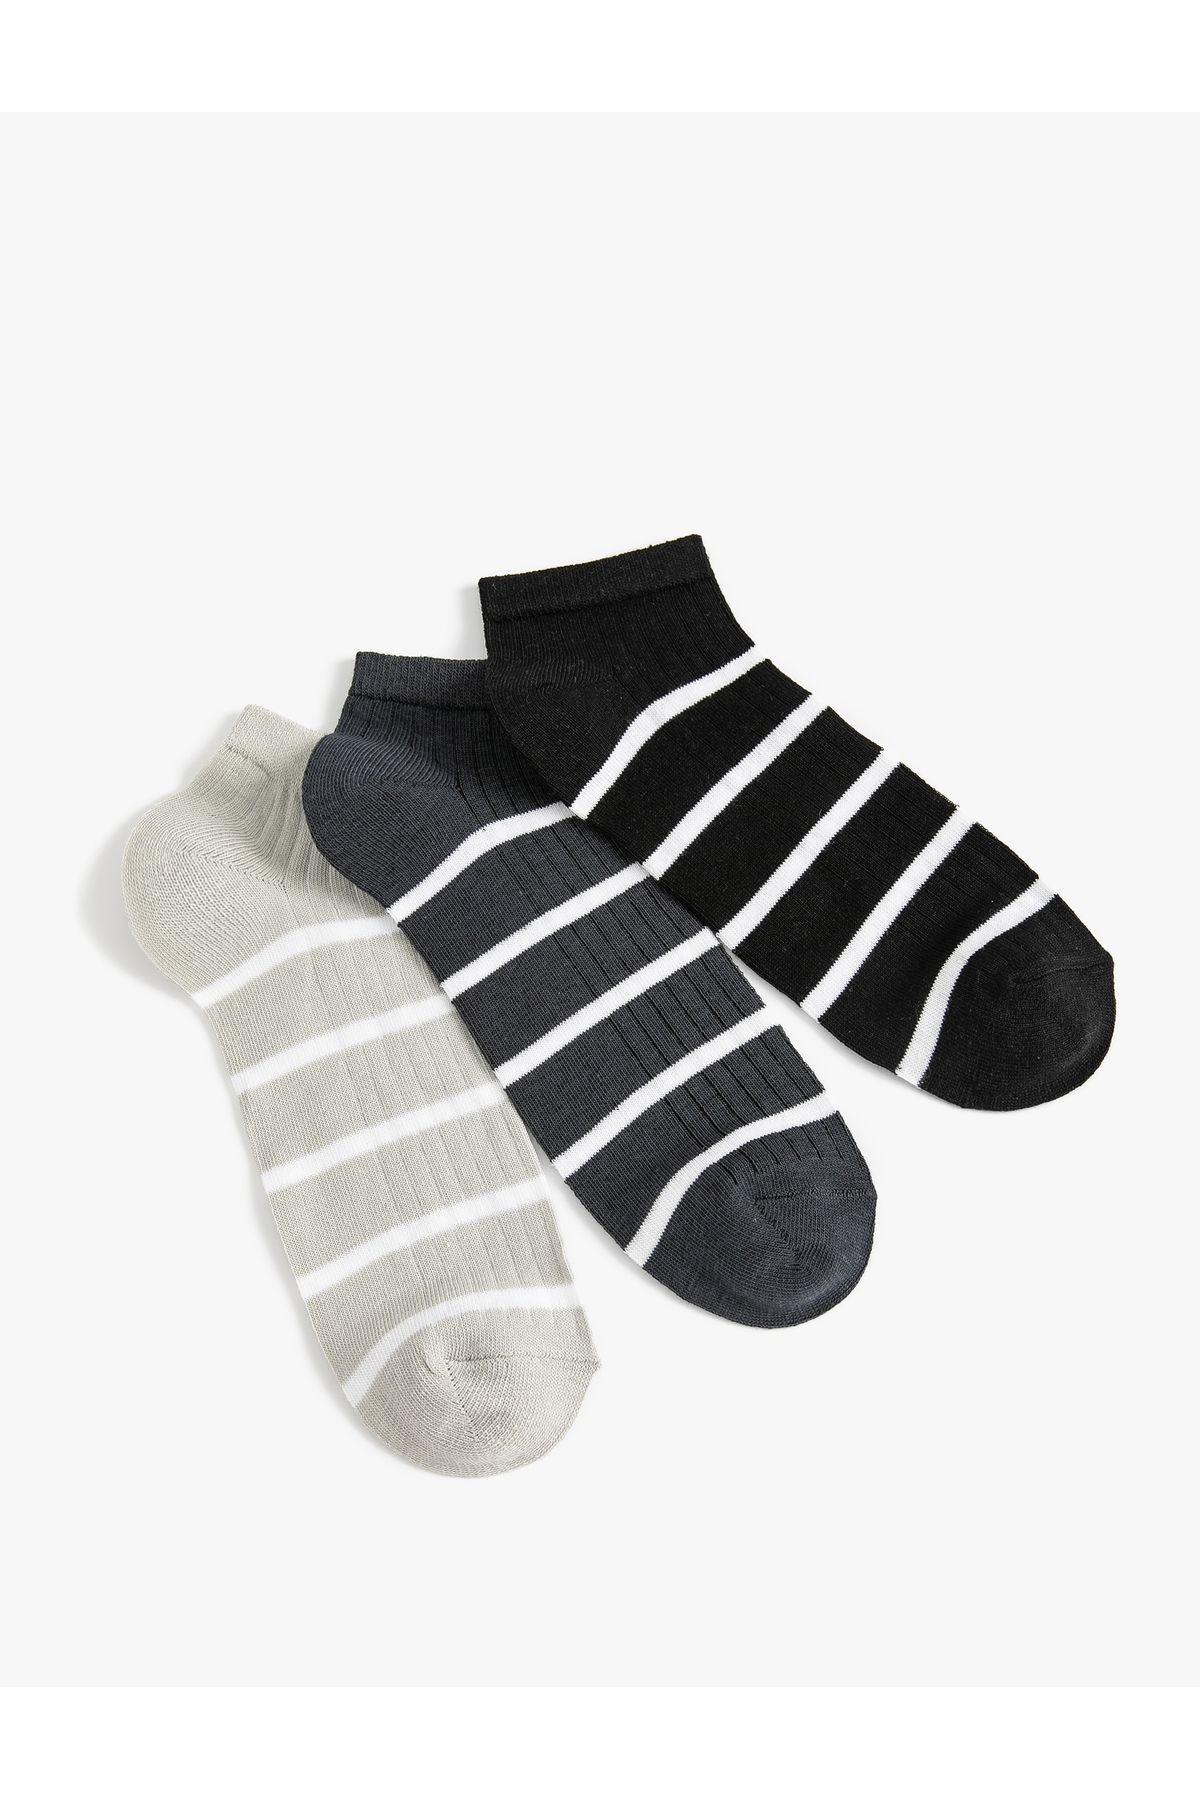 Koton Çizgili Çorap Patik 3'lü Çok Renkli